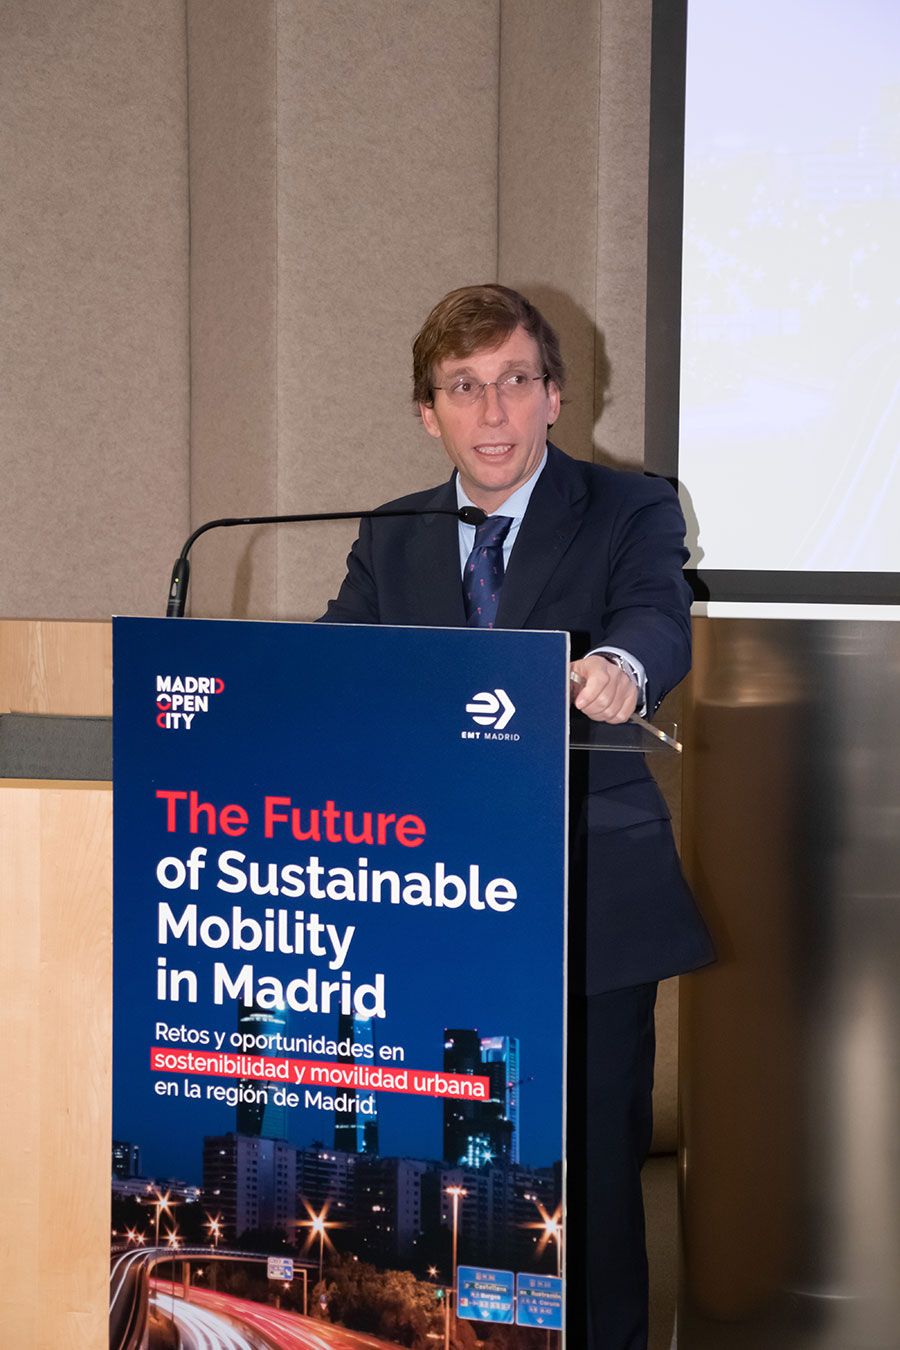 Alcalde-de-Madrid_Inaugura-conferencia-sobre-la-movilidad-urbana-sostenible